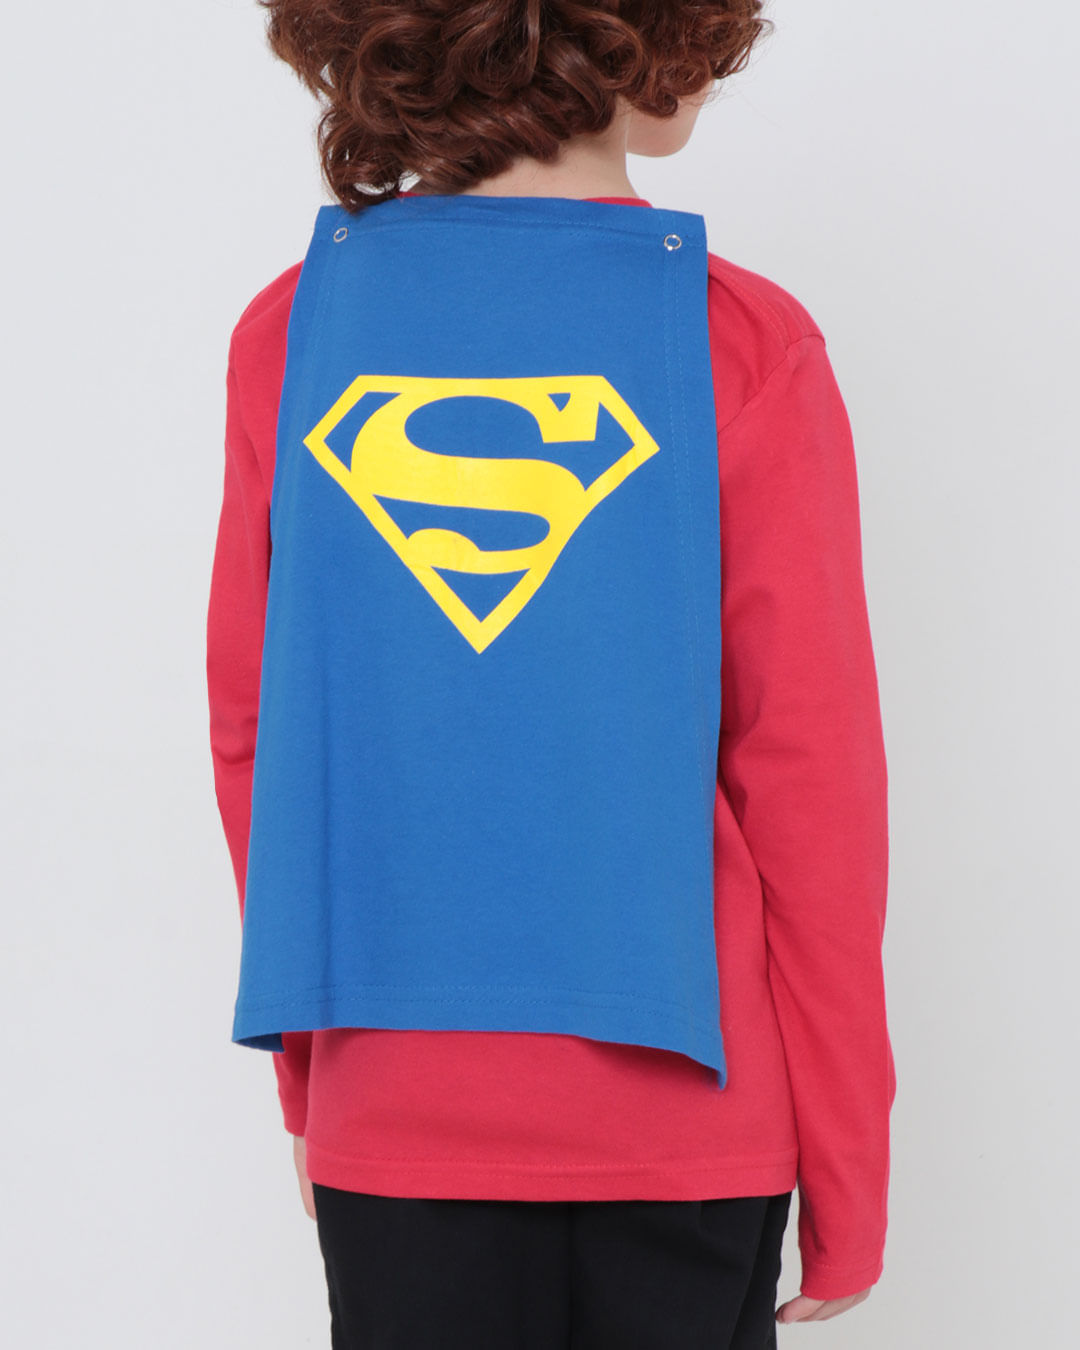 Camiseta-Infantil-Capa-Super-Homem-Liga-da-Justica-Vermelha